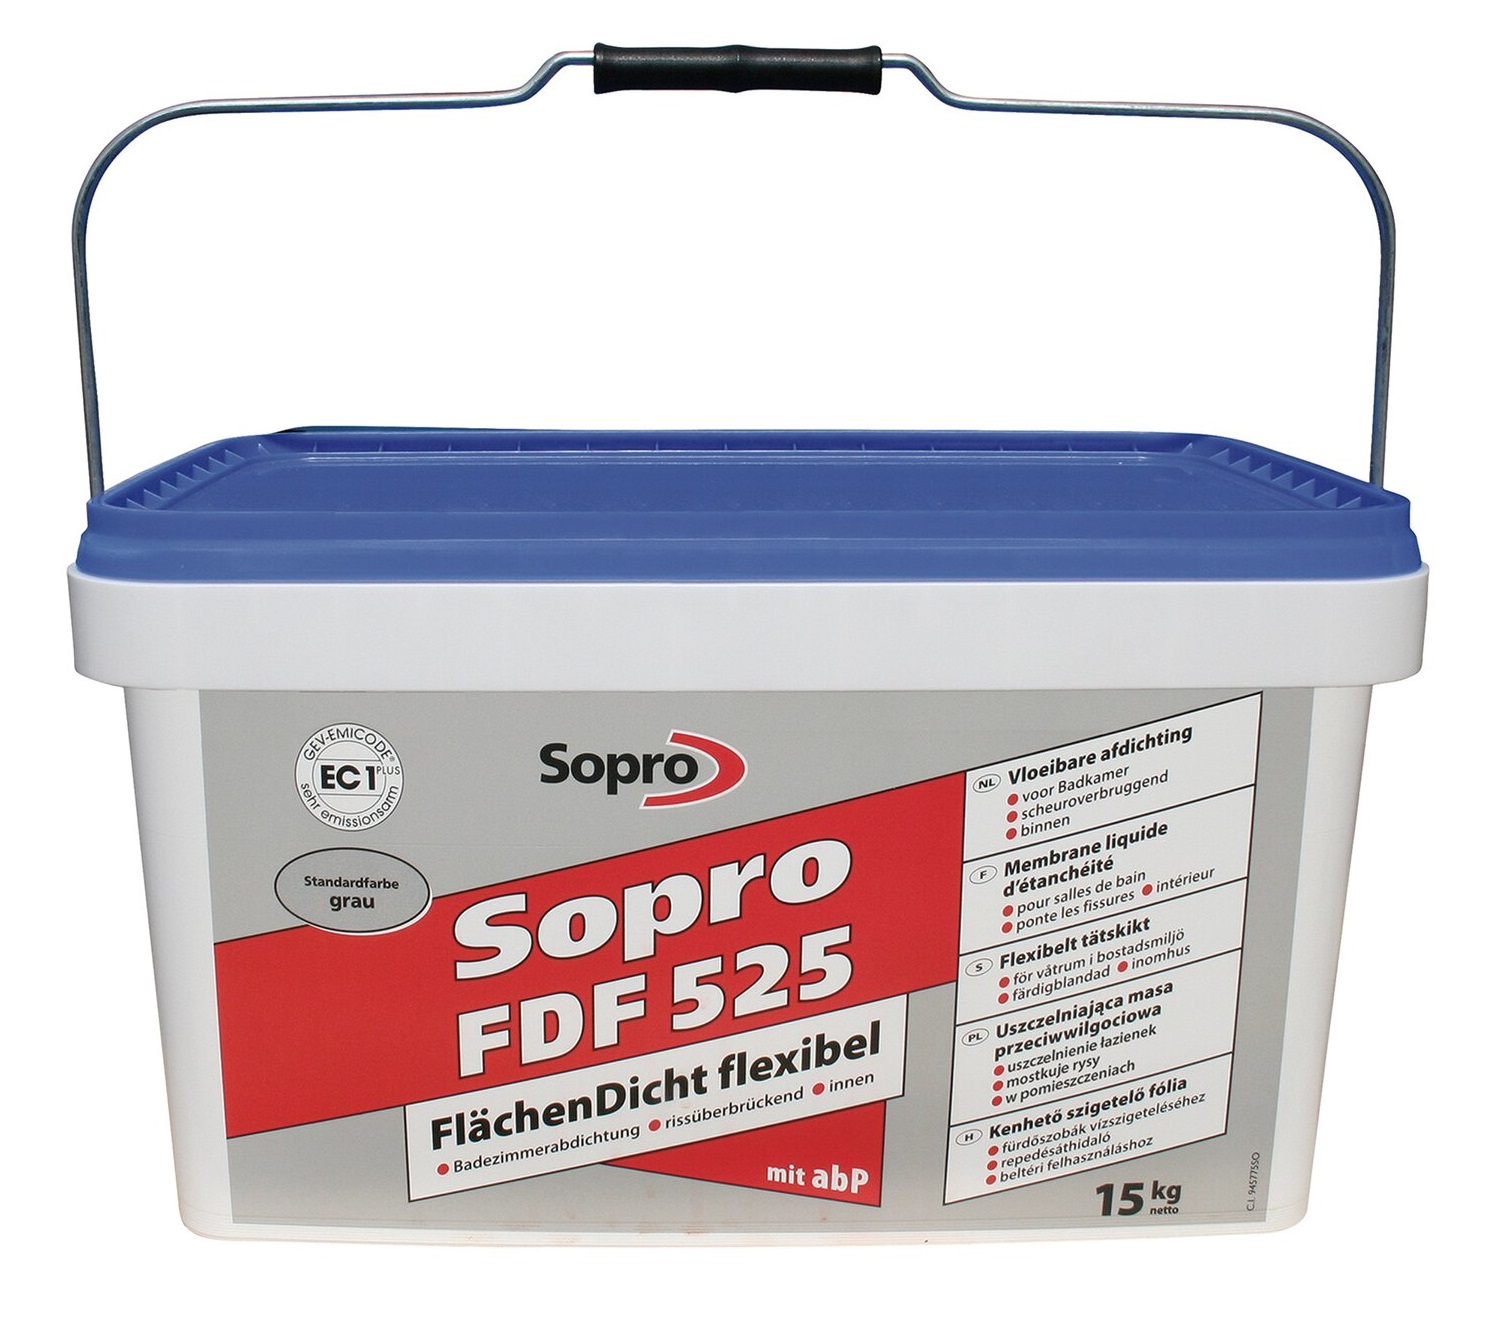 Sopro FDF 525 folia w płynie 5 kg